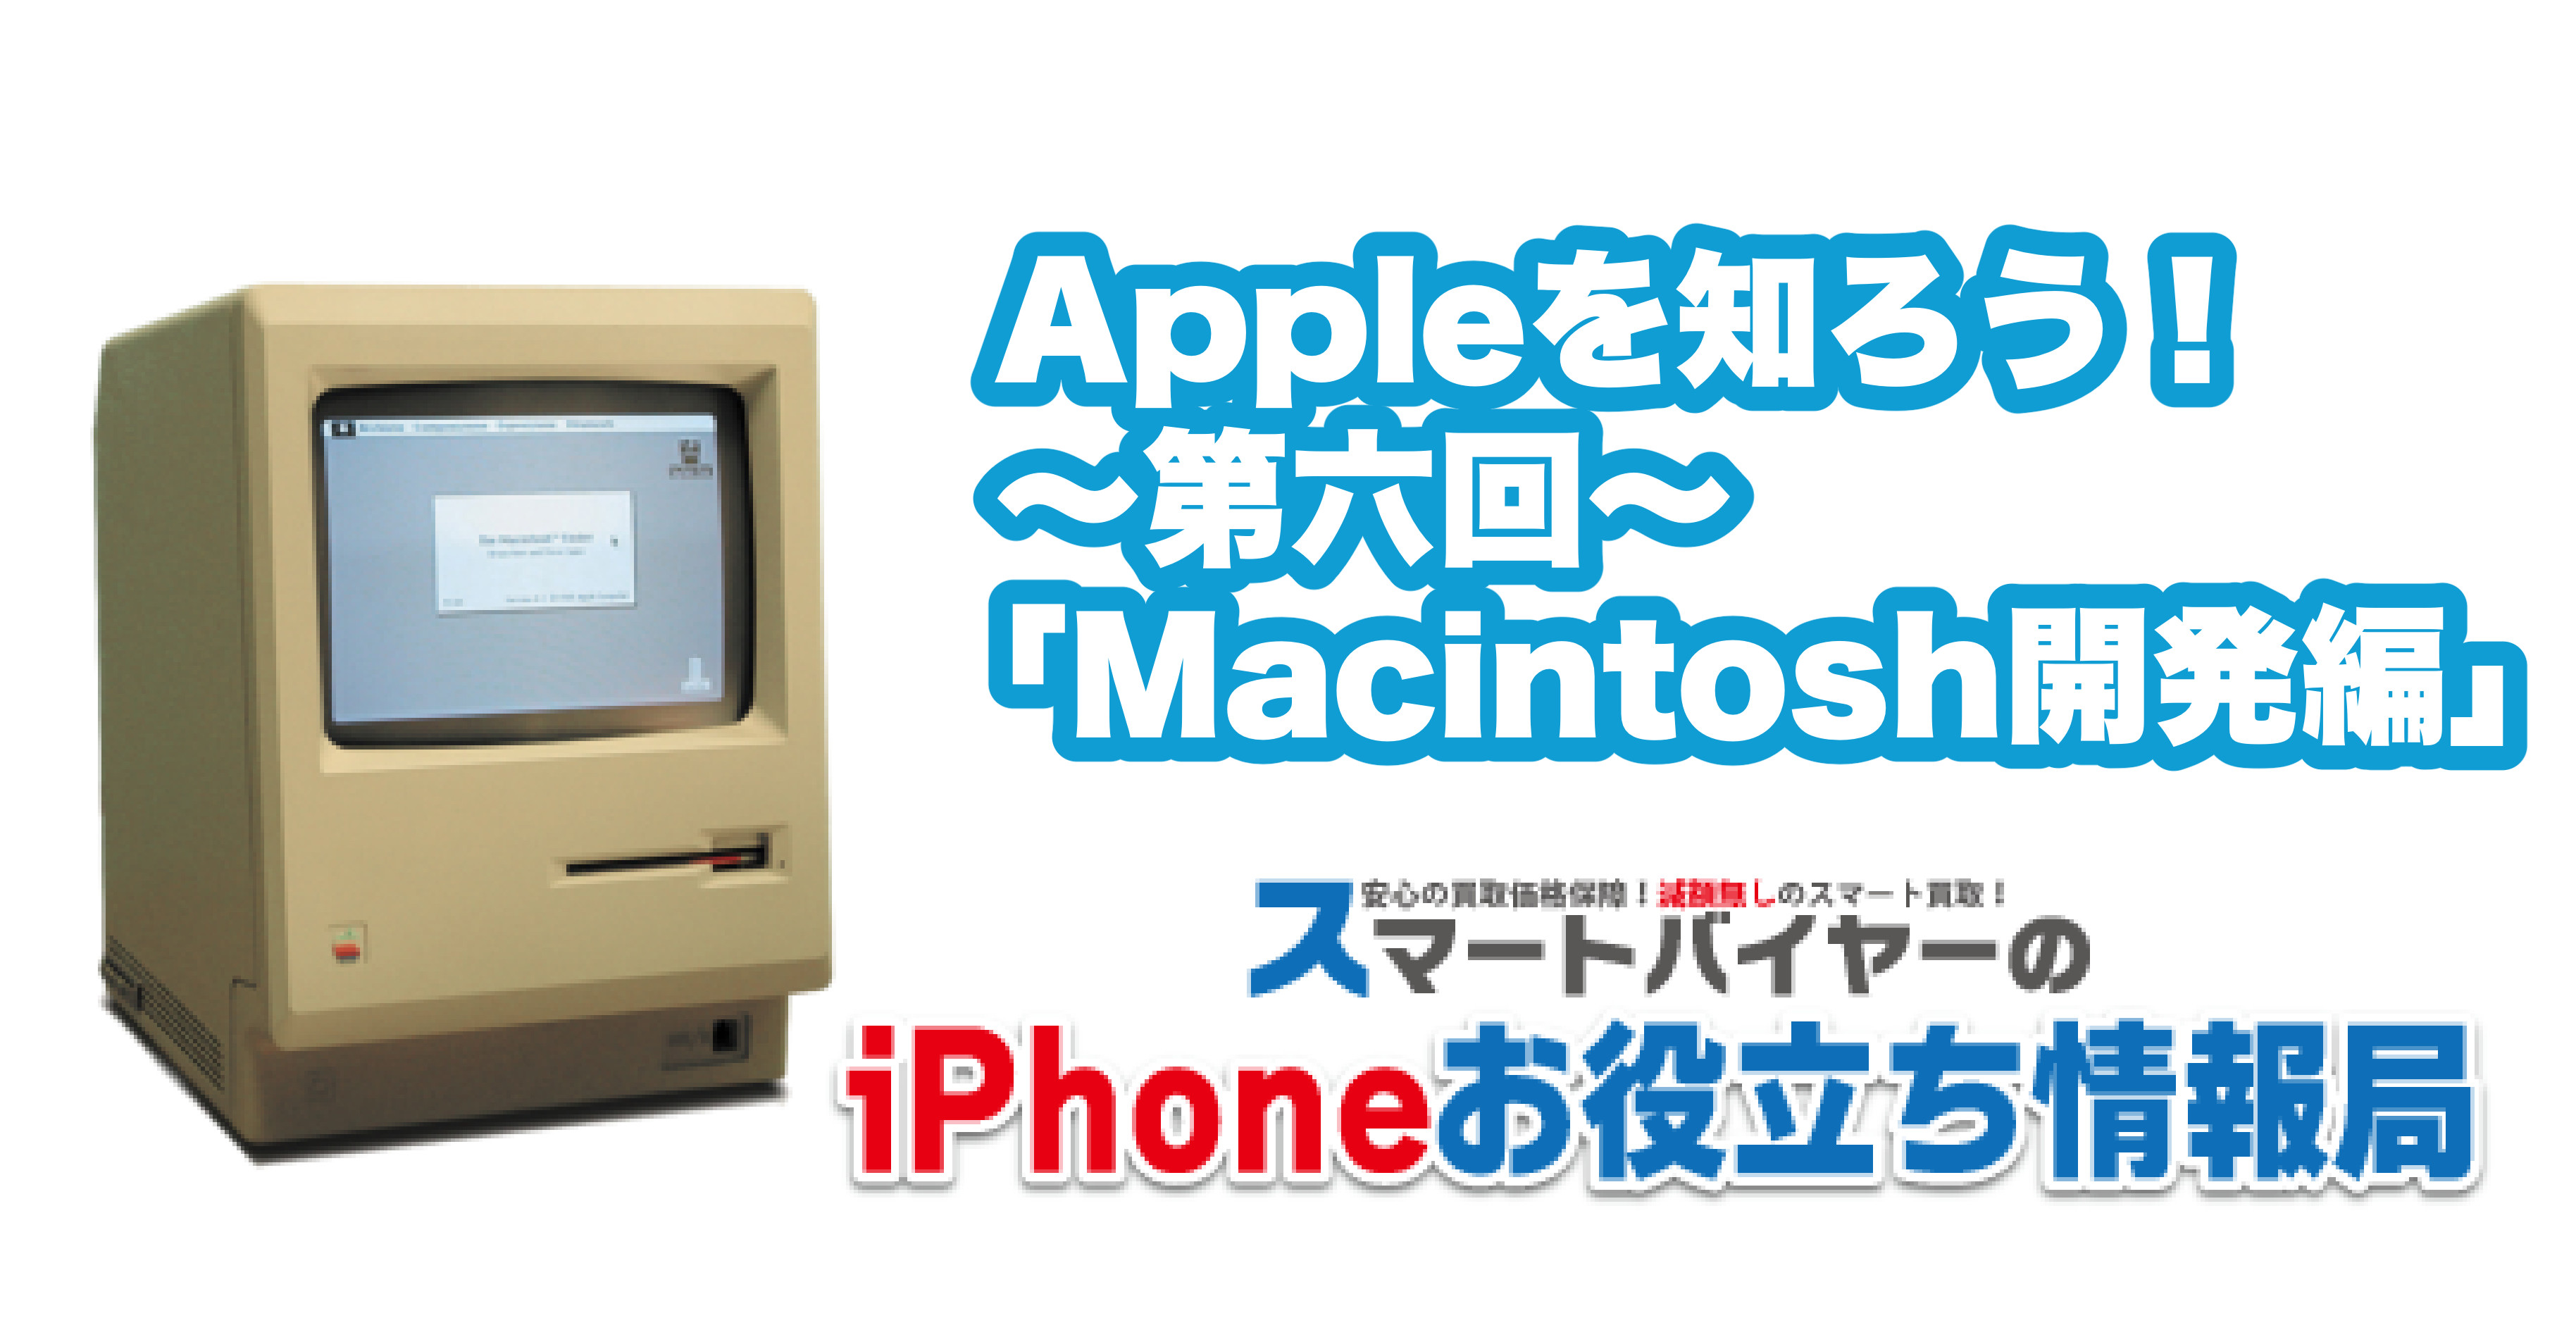 Appleを知ろう！〜第六回〜「Macintosh開発編」 | スマートバイヤーのiPhoneお役立ち情報局